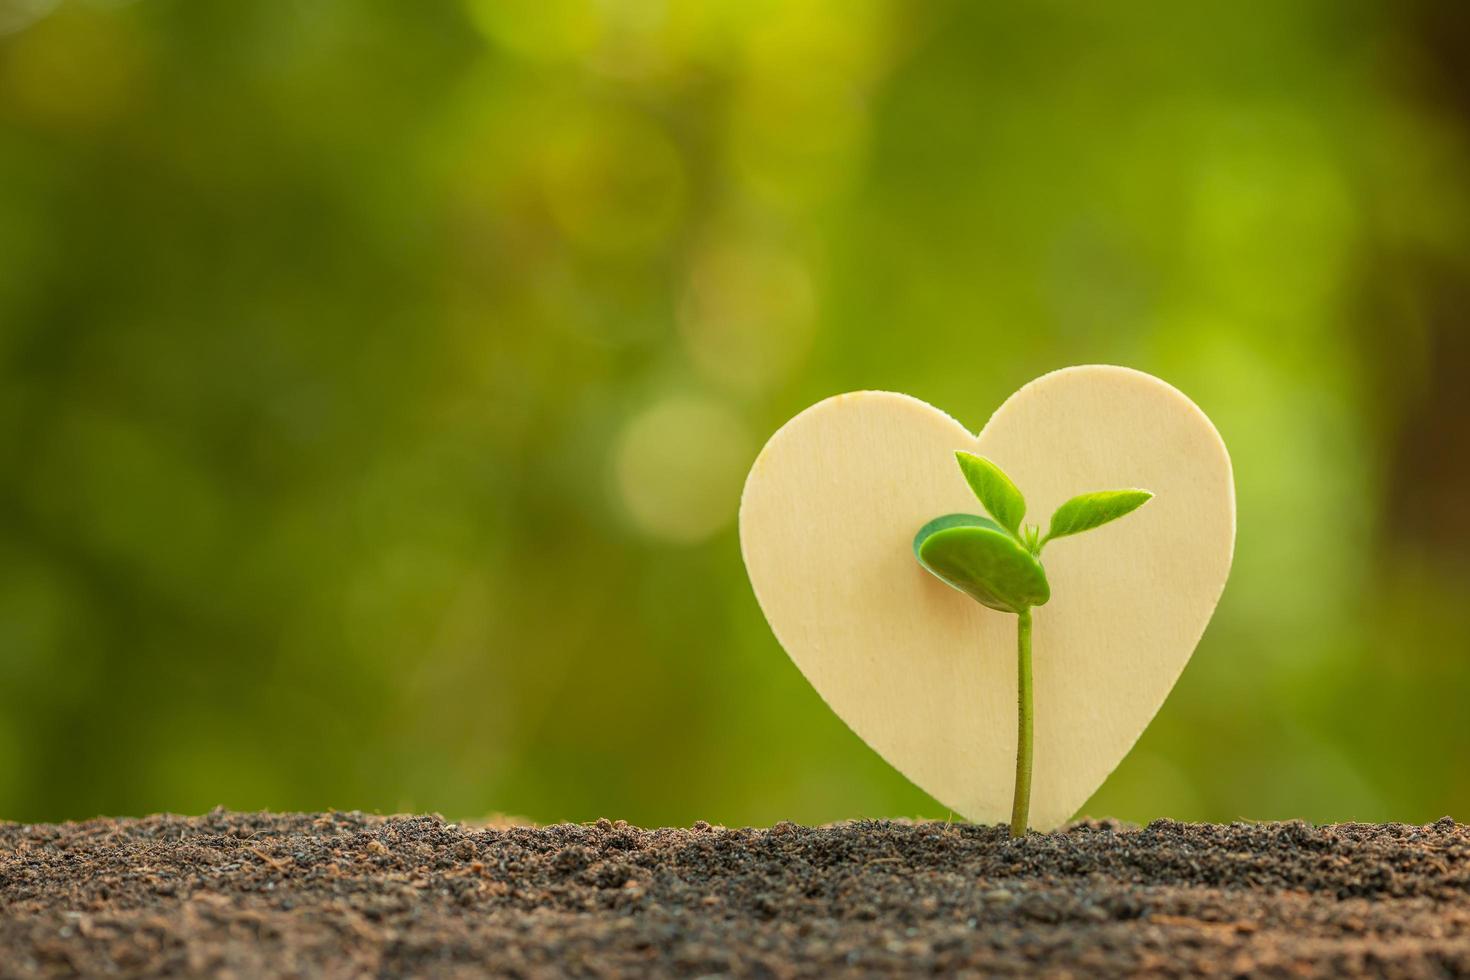 broto verde crescendo no solo e símbolo de coração de madeira na luz solar ao ar livre e fundo verde borrão. árvore do amor, salvar o mundo ou conceito de crescimento e meio ambiente foto